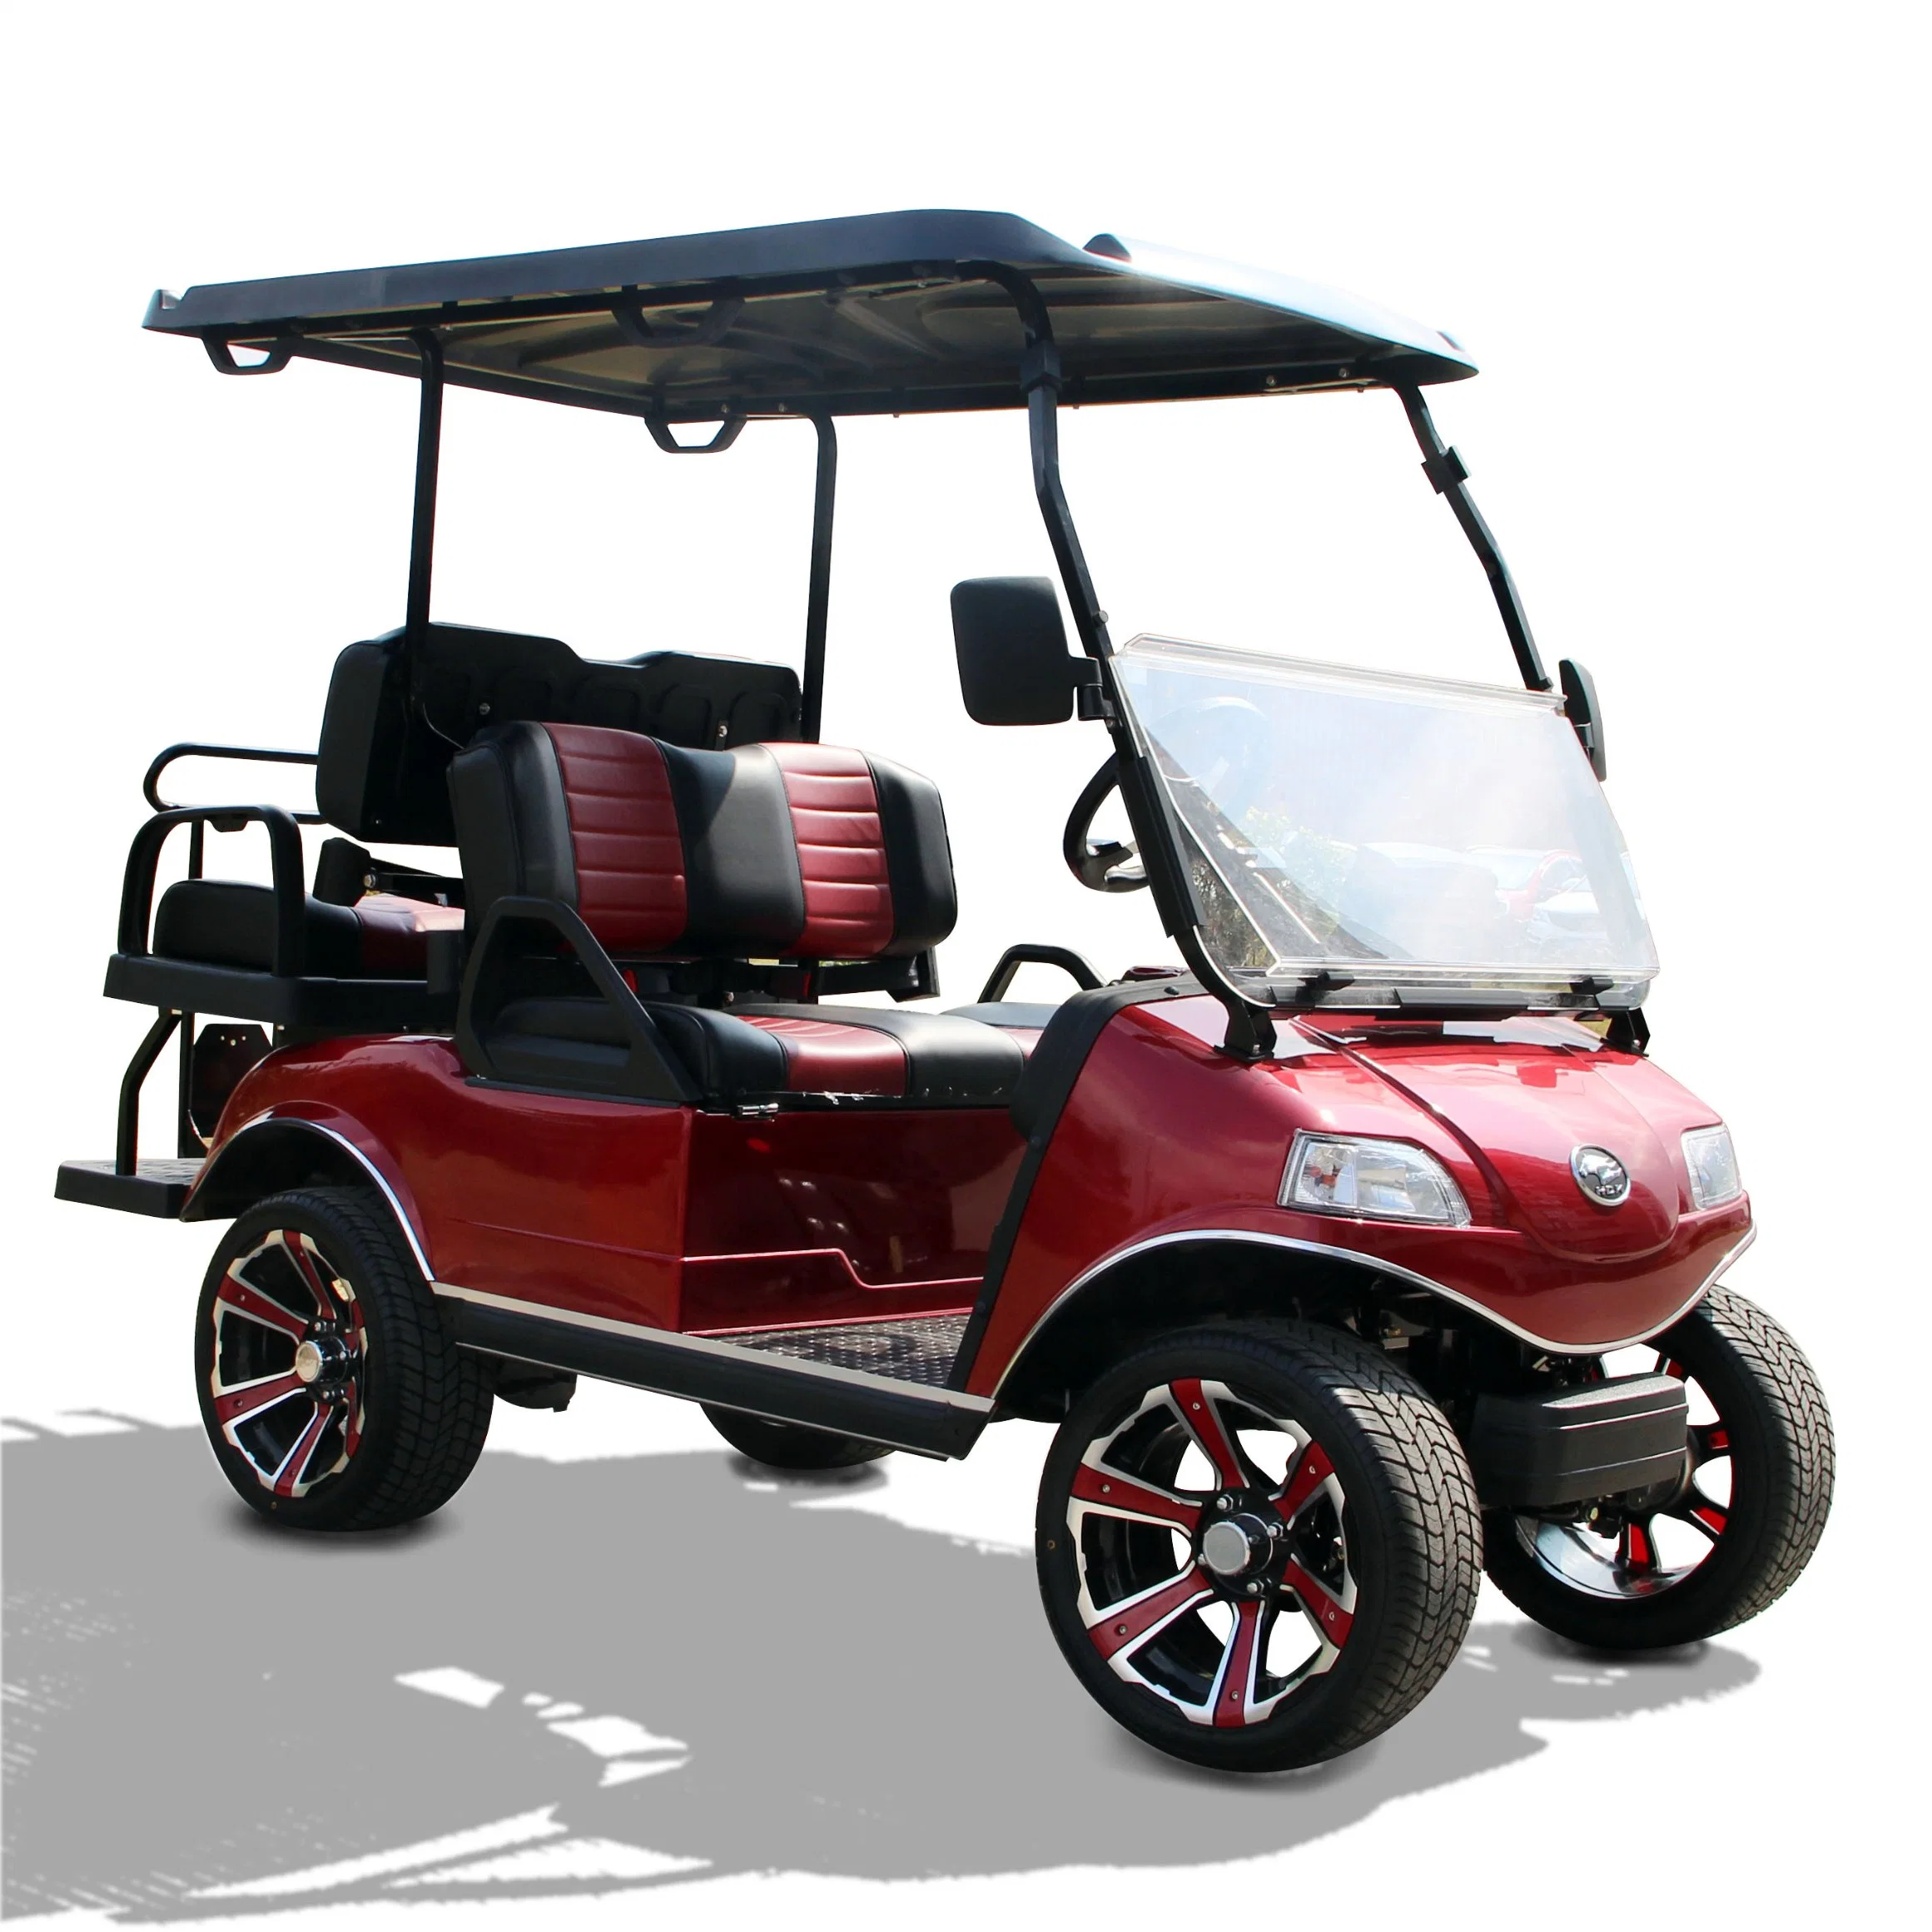 Nuevo modelo de ventas de fábrica de 4 plazas de coche de golf eléctrico con batería de litio